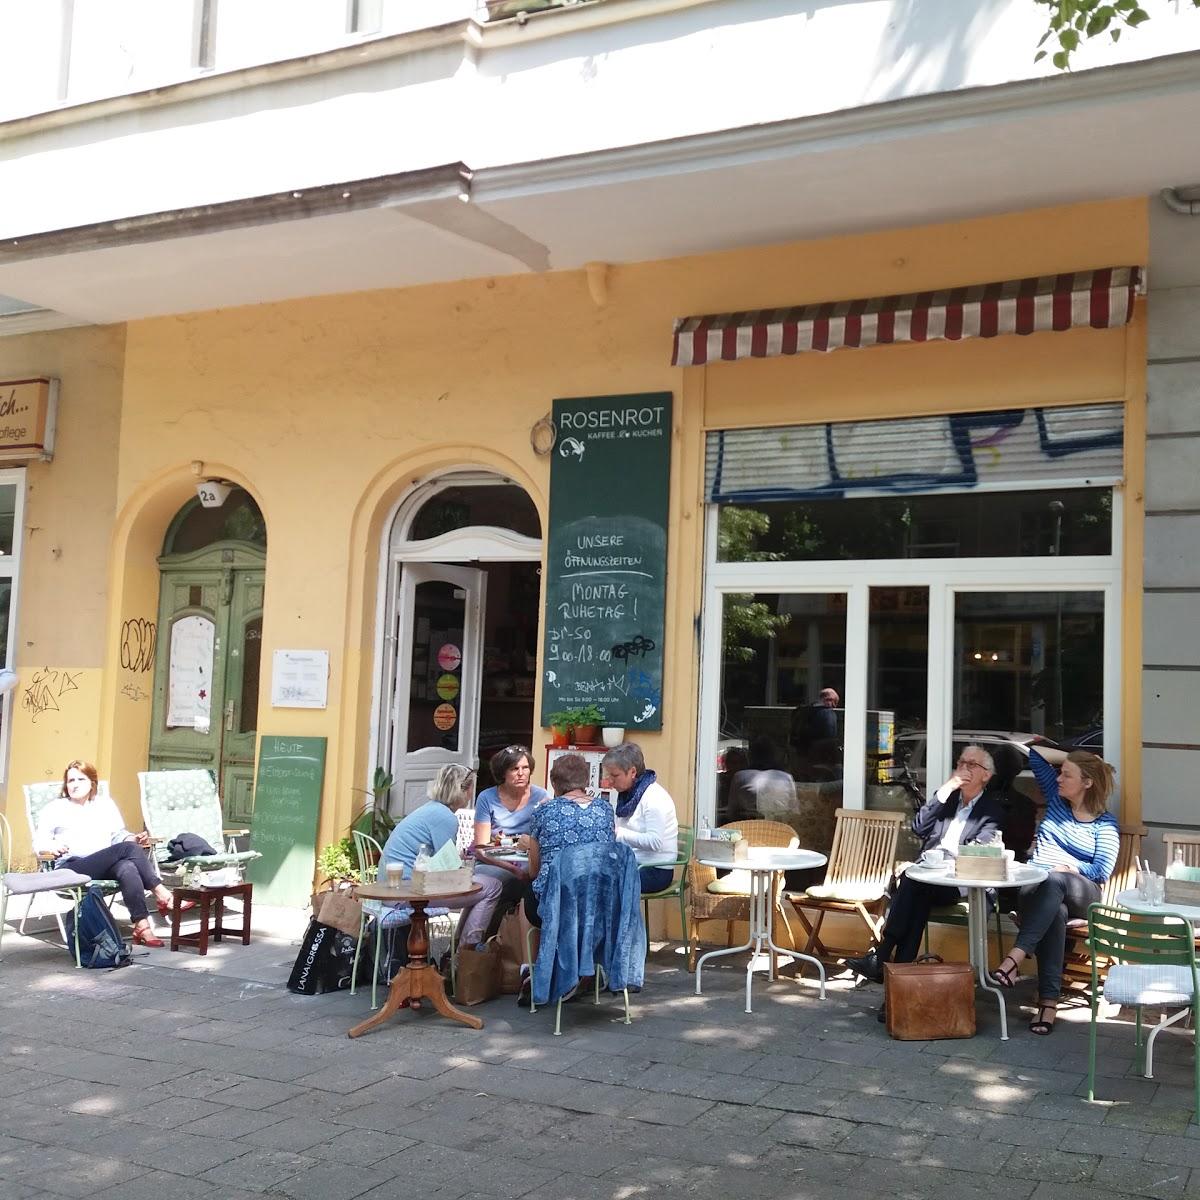 Restaurant "Café Rosenrot" in Berlin